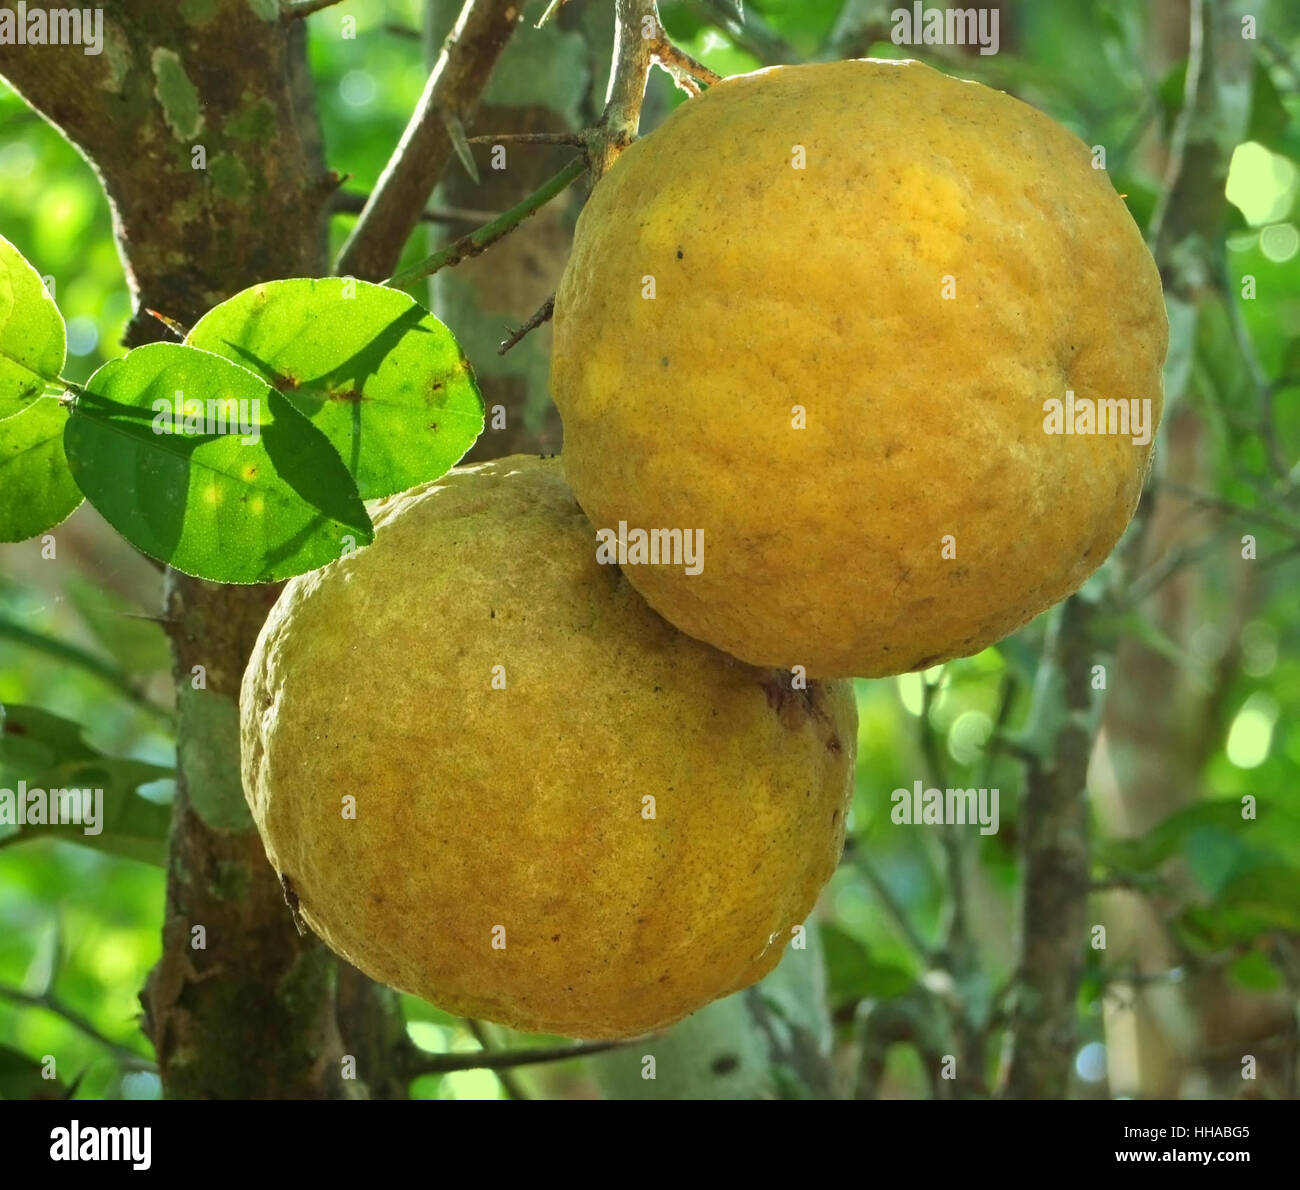 Dettaglio shot che mostra due frutti gialli presso la Repubblica Dominicana, un isola di Hispanola quale è una parte delle Antille Maggiori arcipelago nella regione dei Caraibi Foto Stock